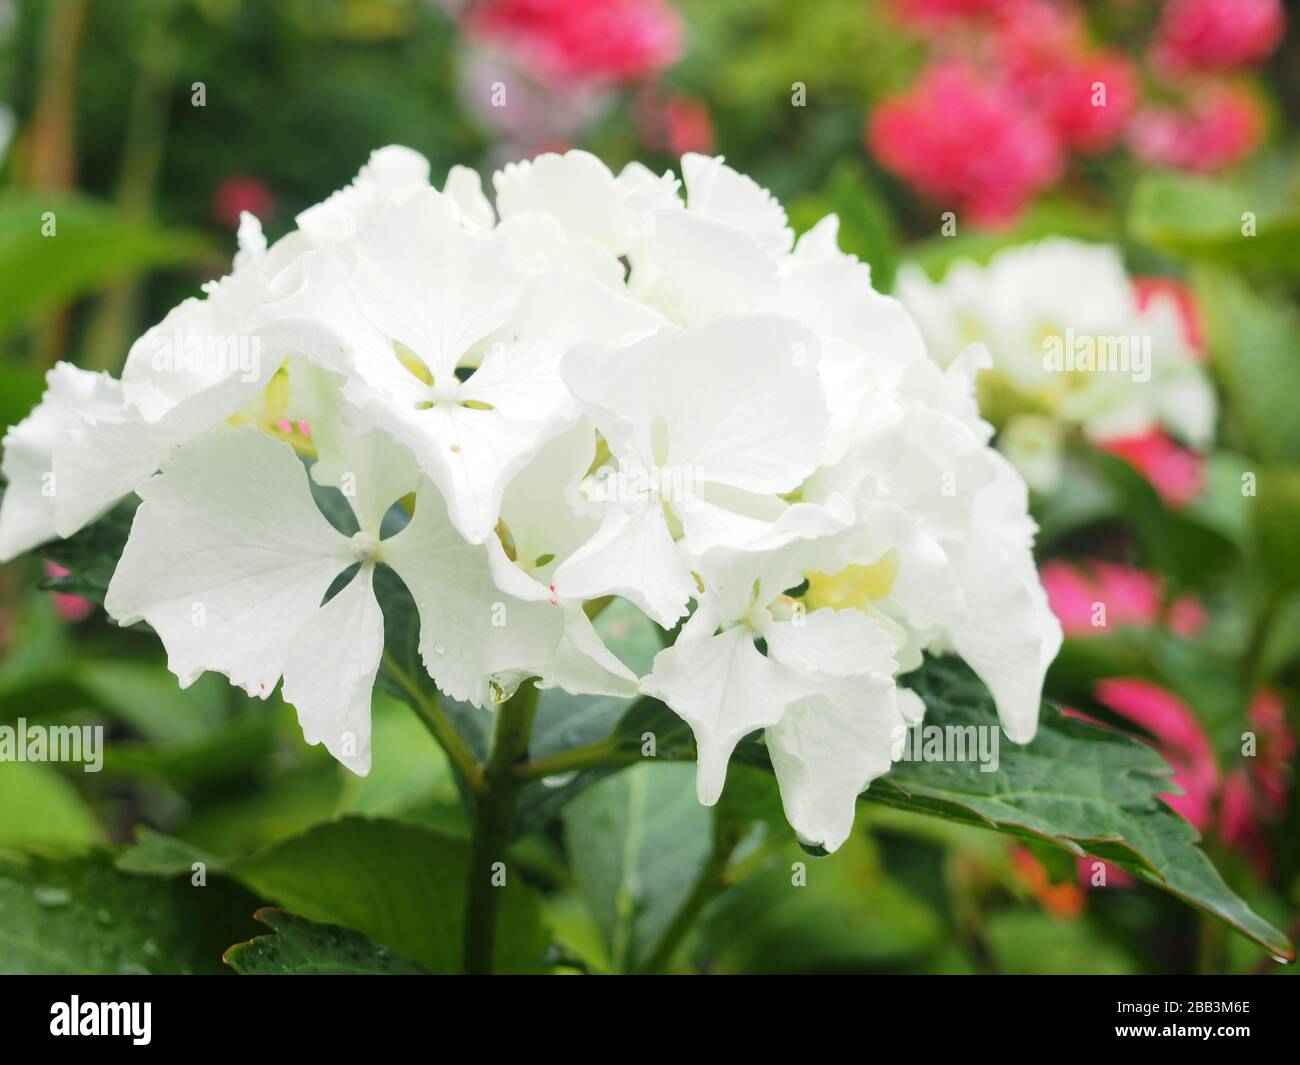 Pétales blancs d'une fleur d'hydracea. Gros boutons de fleurs blanches. Gros plan. Banque D'Images